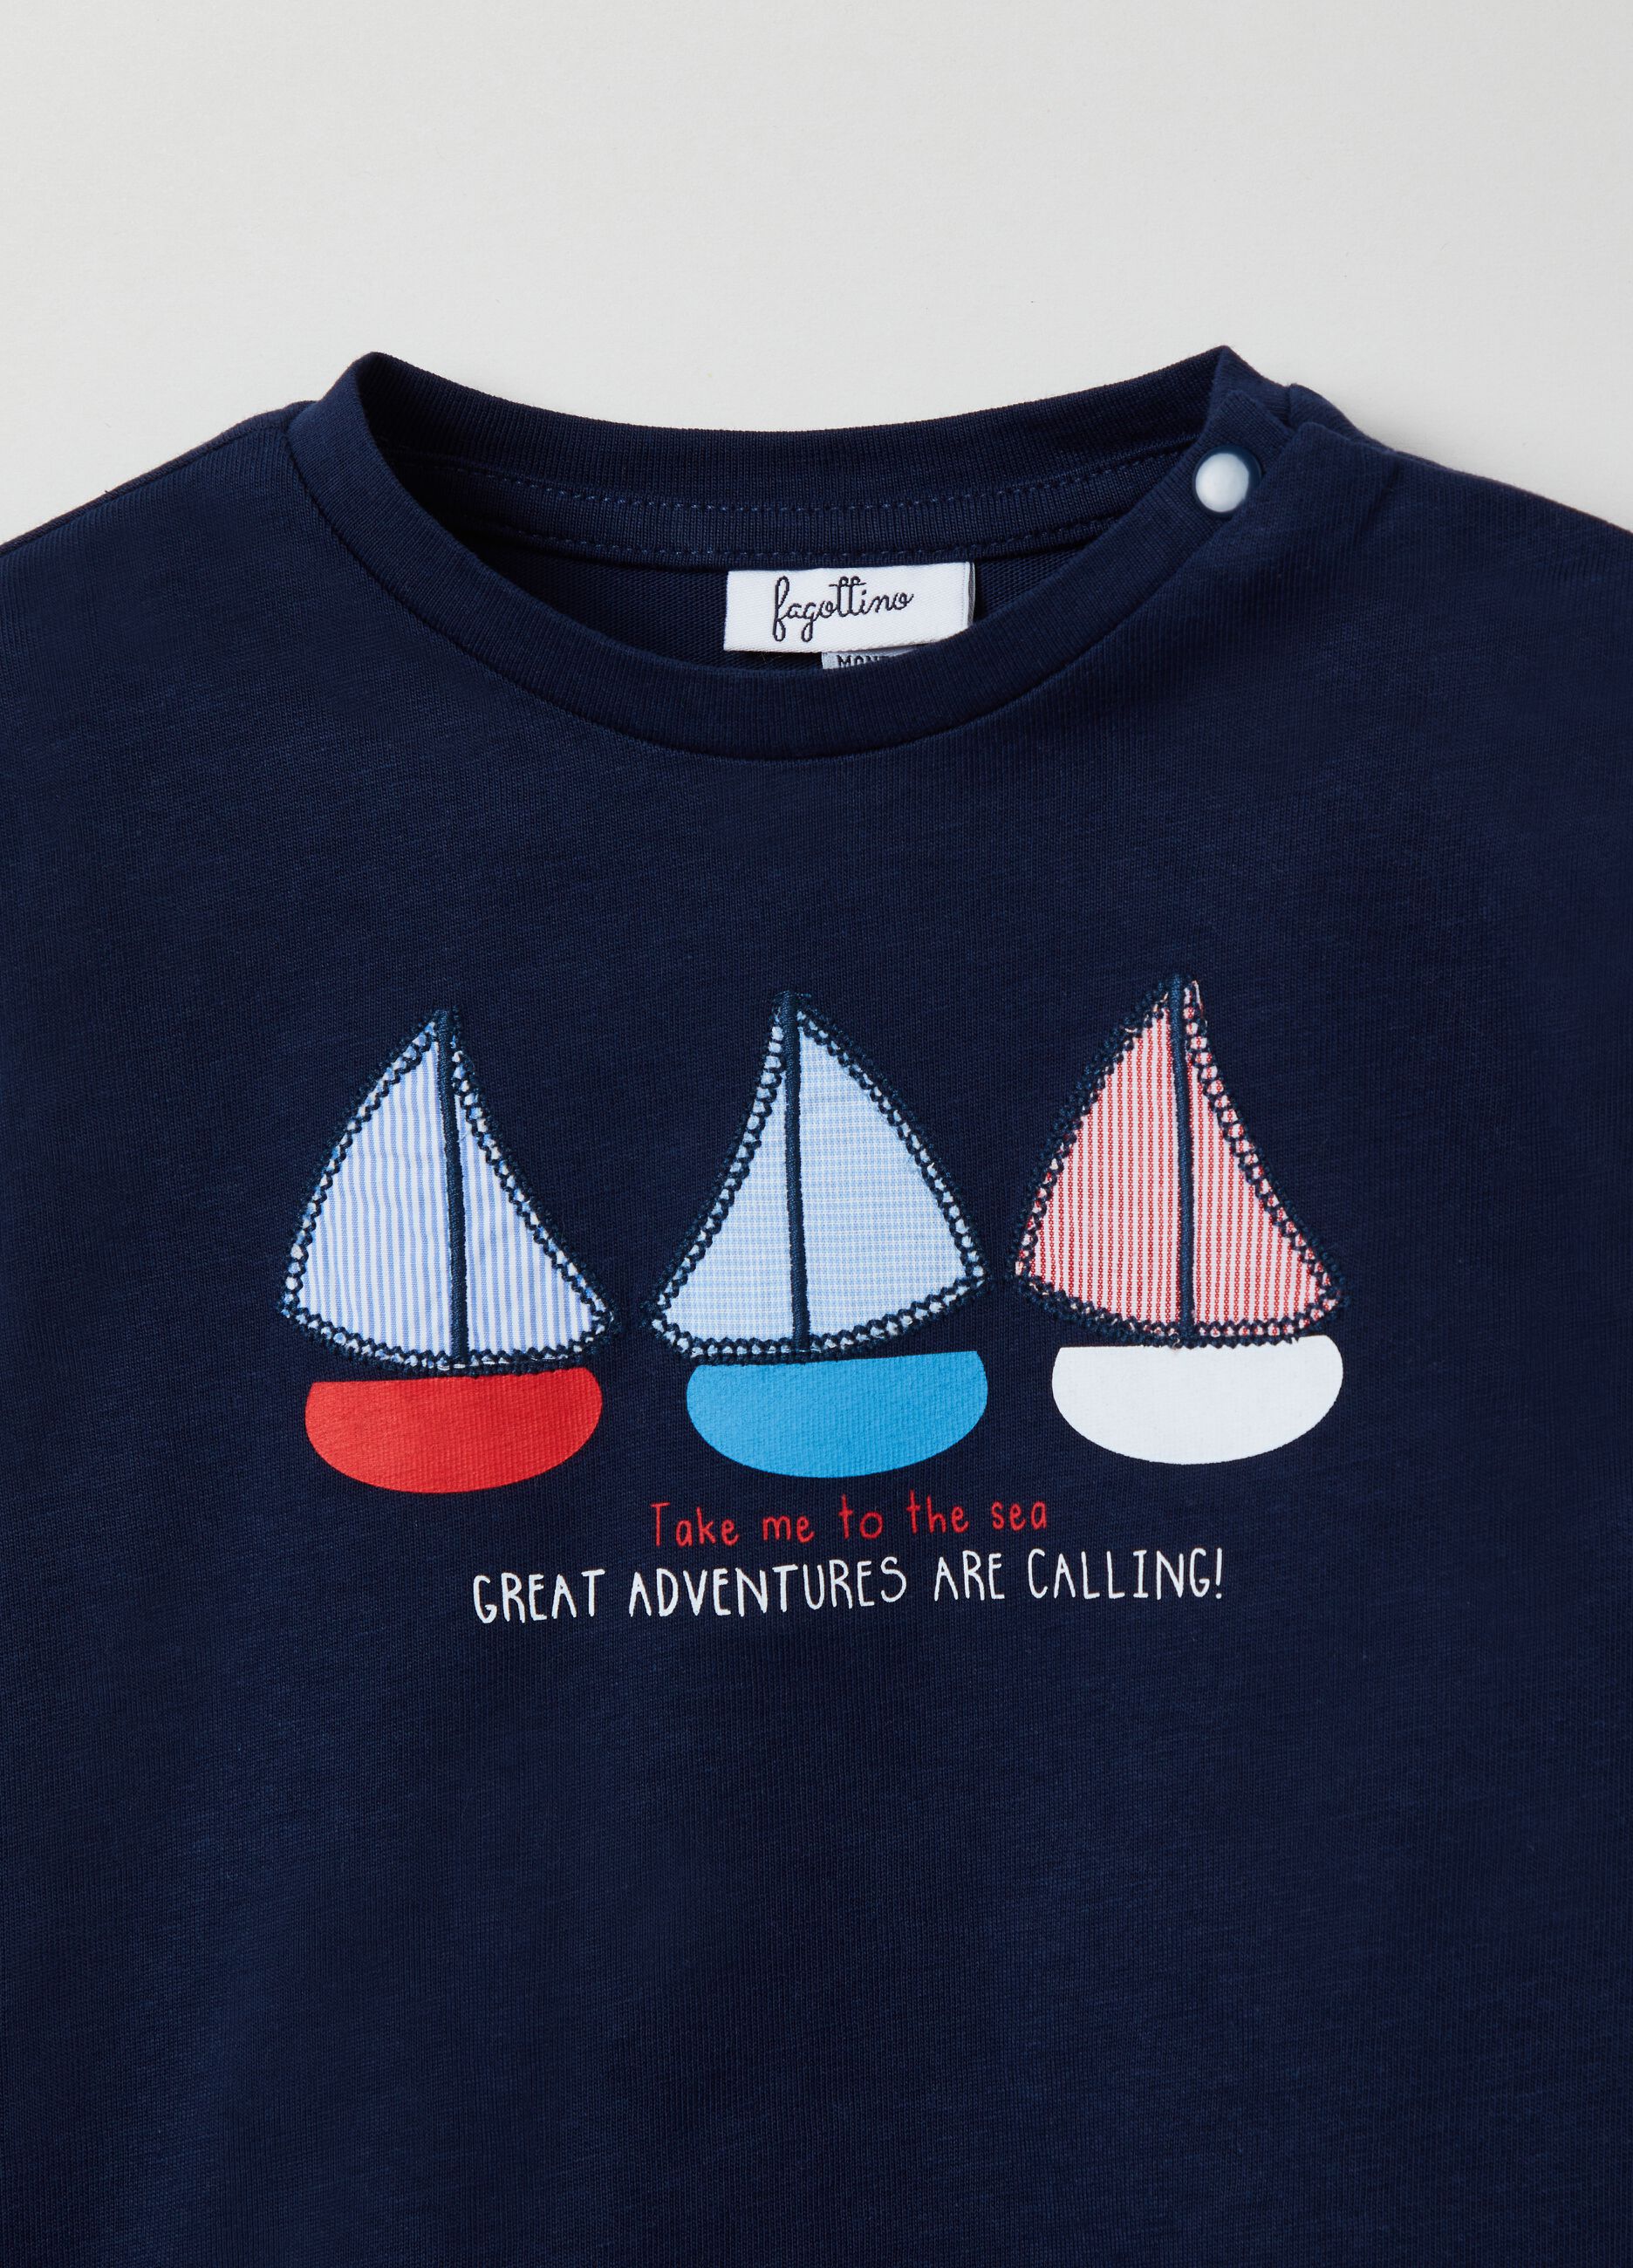 Camiseta de manga larga con barcos de vela